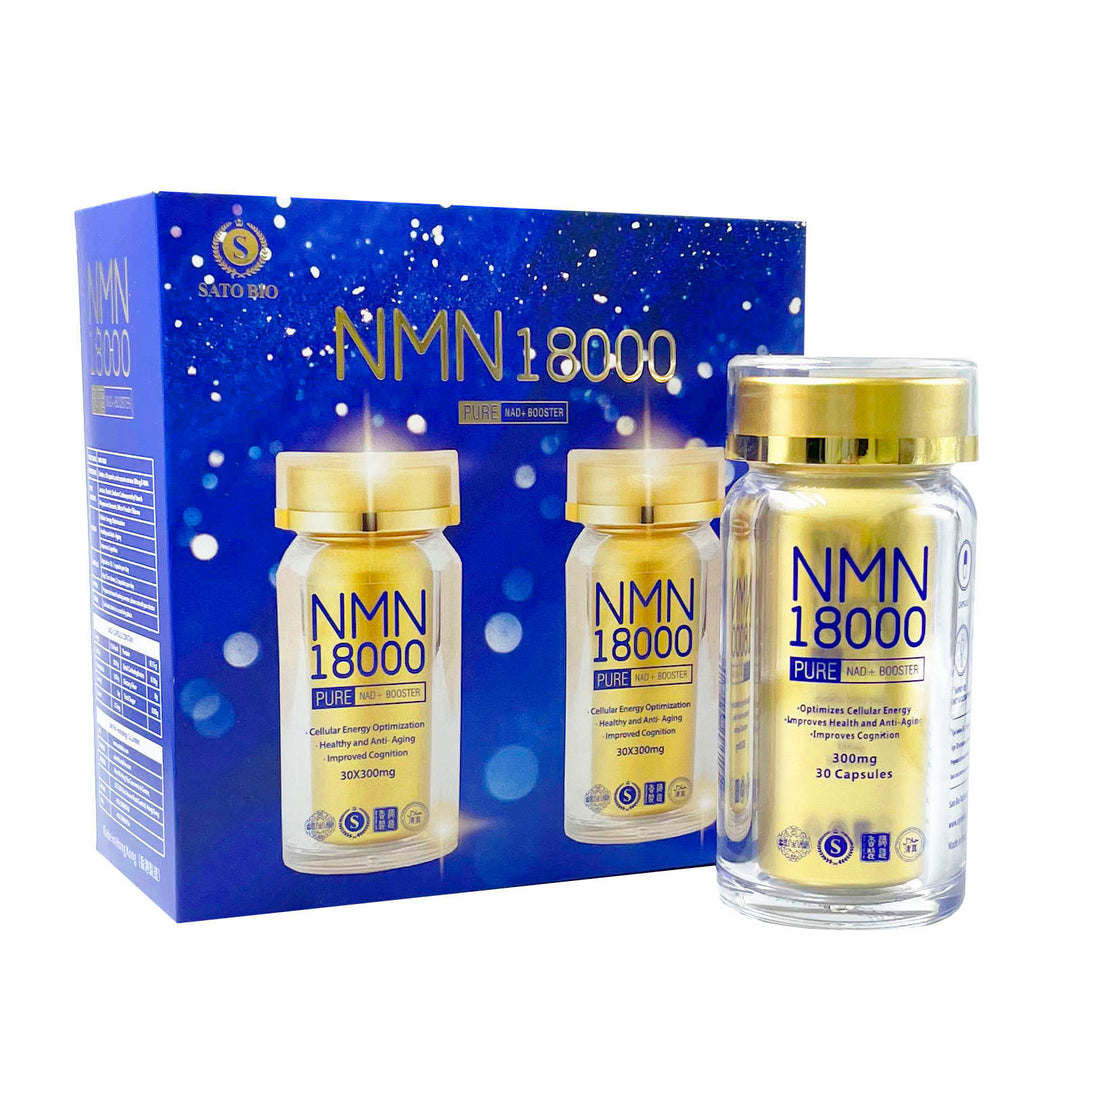 NMN 18000 PURE (2瓶裝)